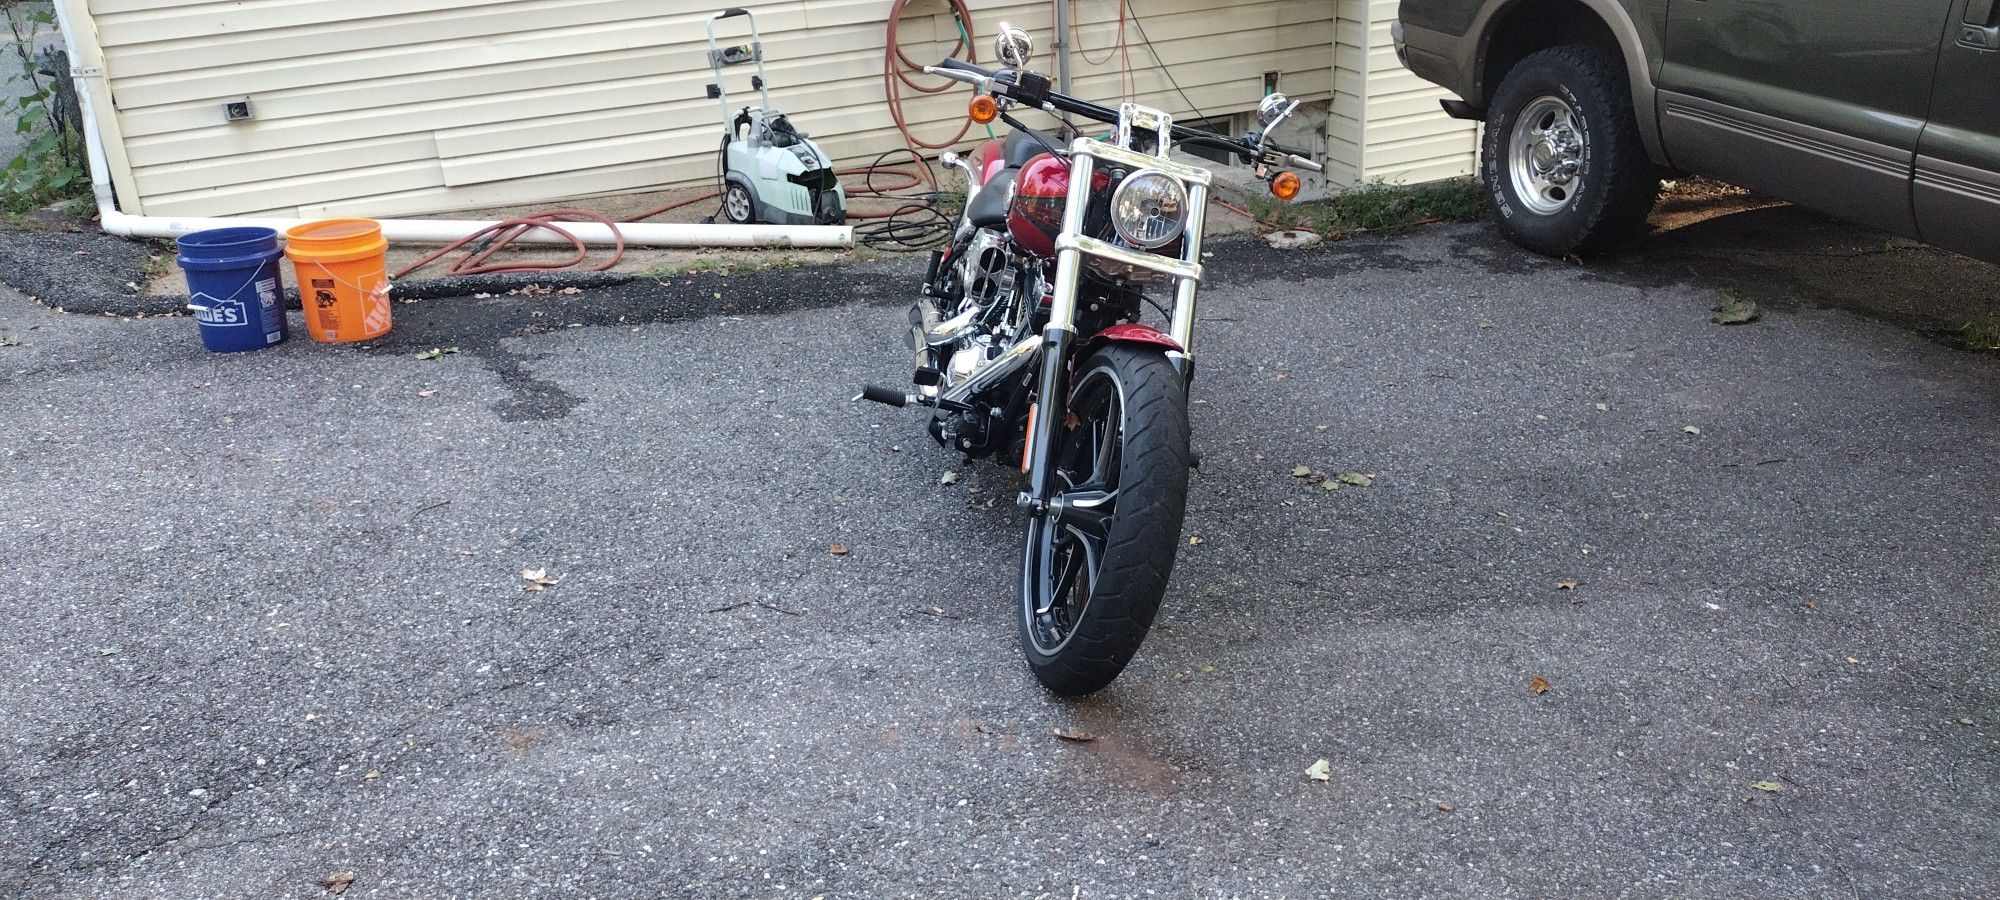 2013 Harley Davidson Breakout Softail